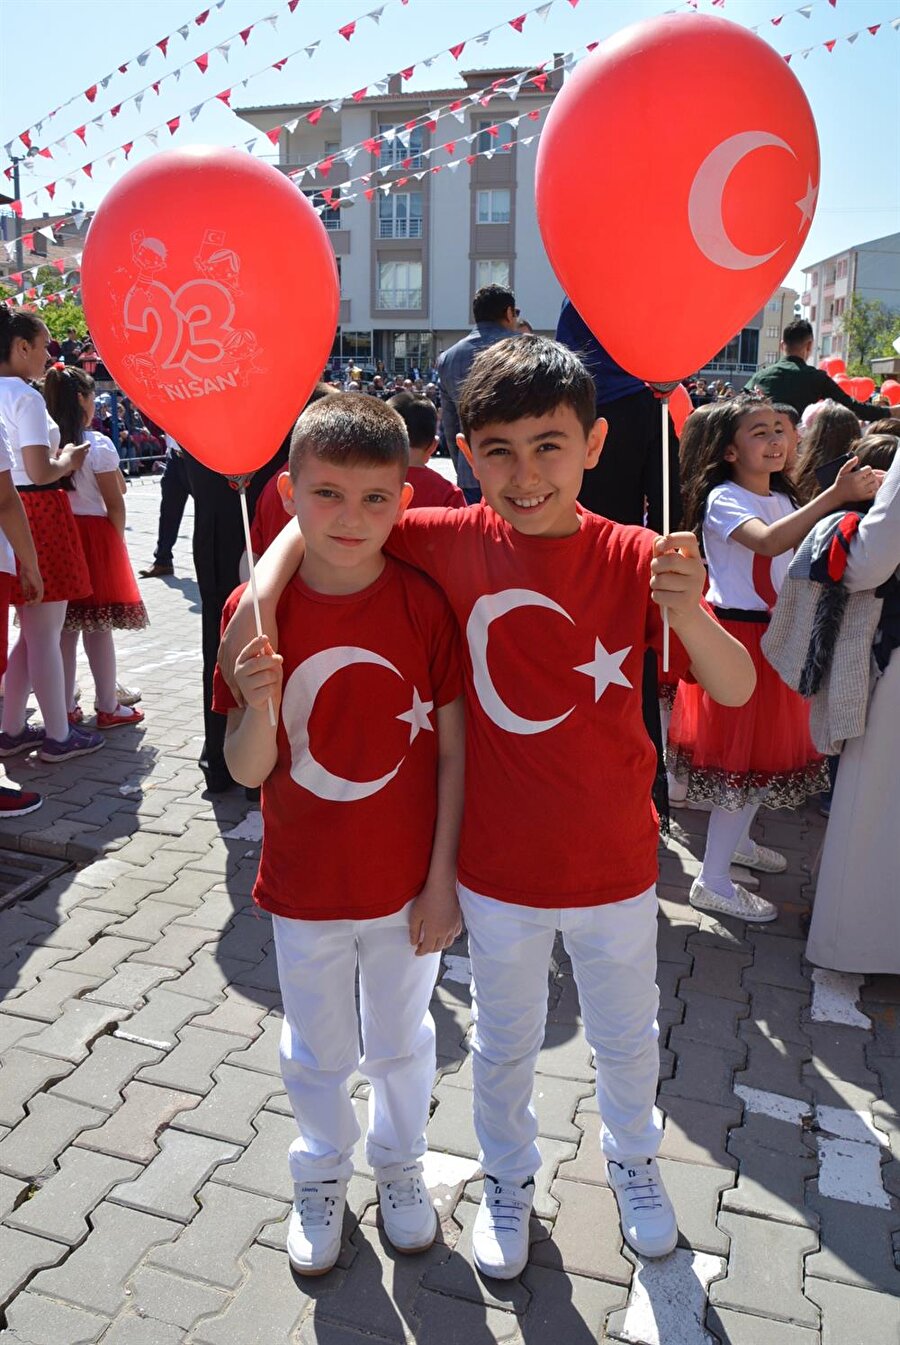 
                                    Kırşehir'de düzenlenen etkinliklerde, Türk bayraklı tişörtlerini giyen öğrenciler hem mutluluk hem de gurur duygusunu yaşadılar.
                                